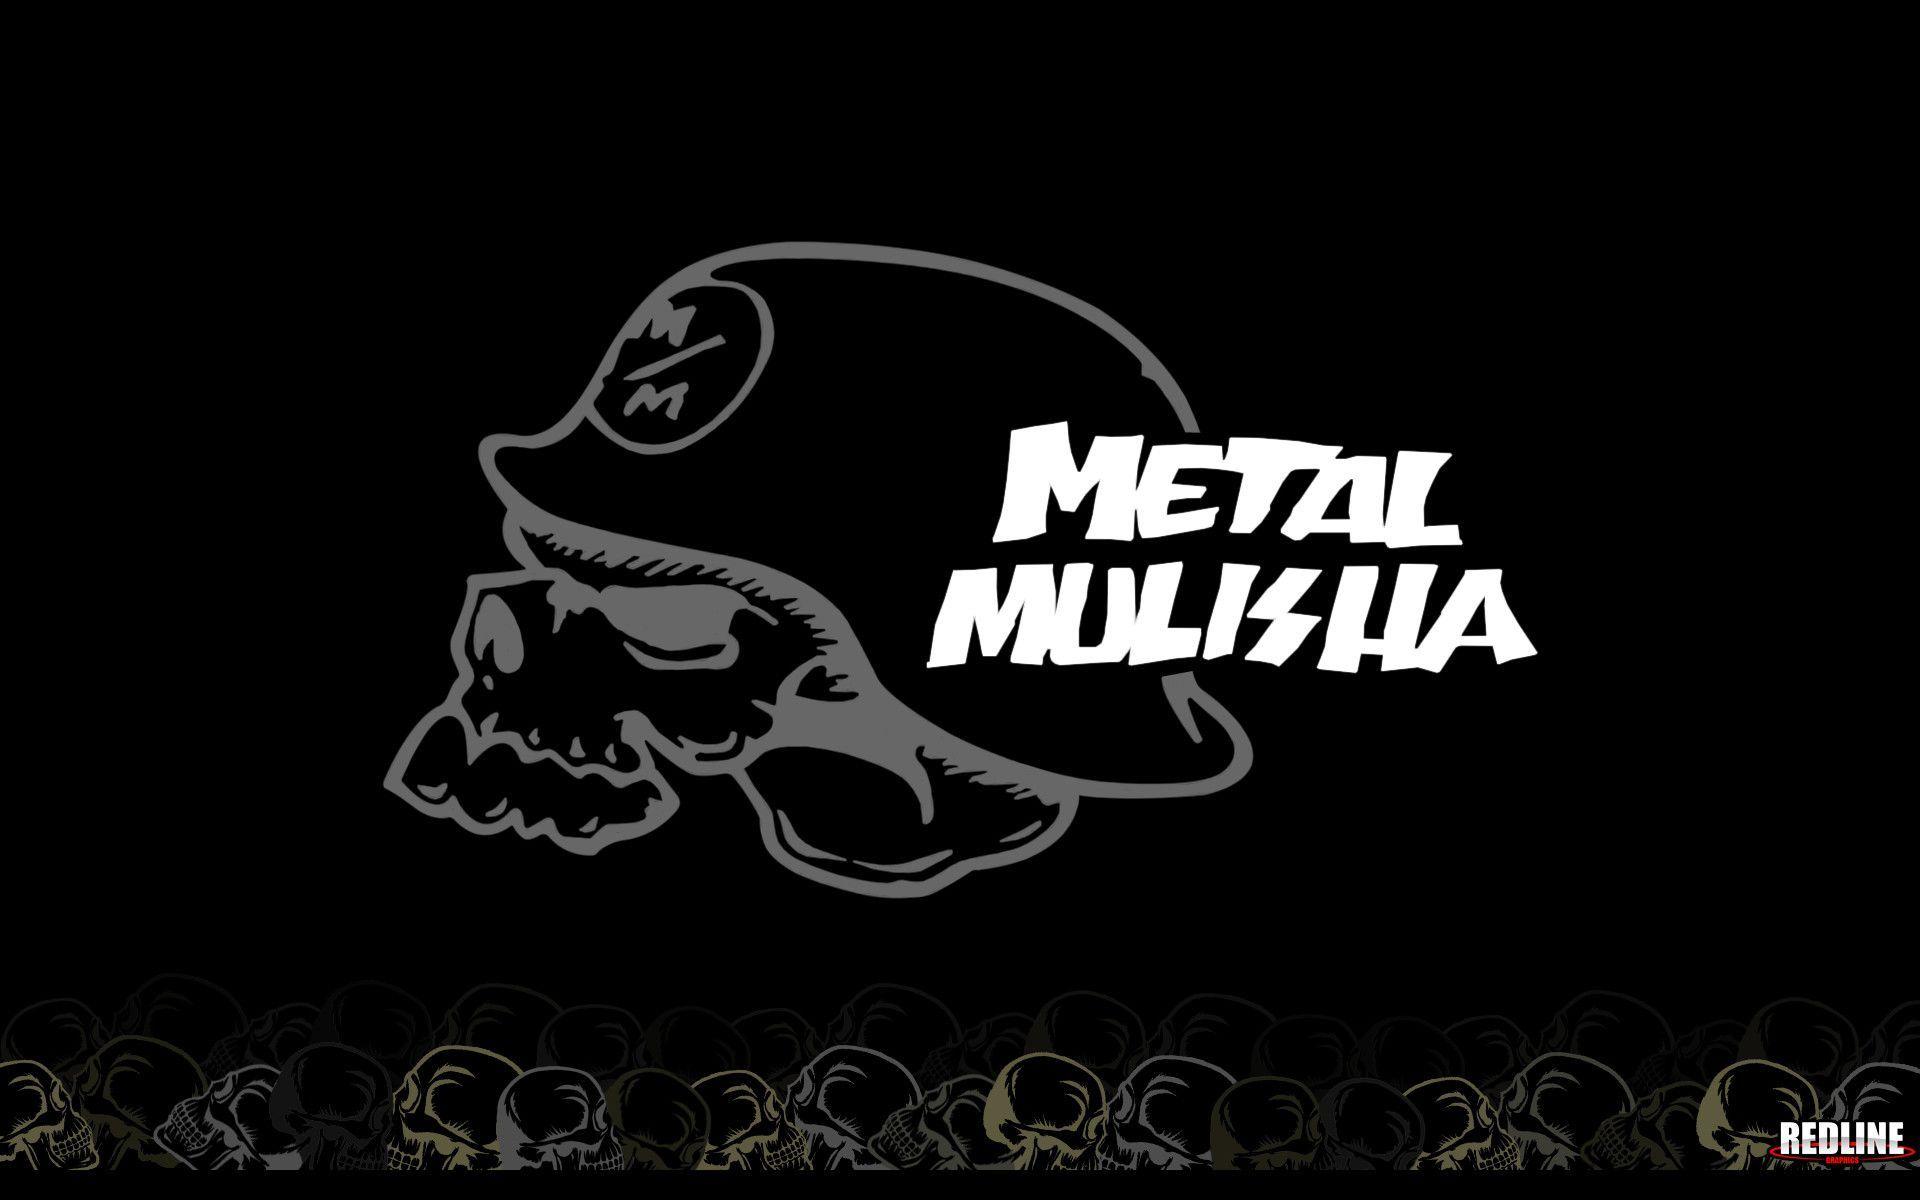 Metal Mulisha Wallpaper. Large HD Wallpaper Database